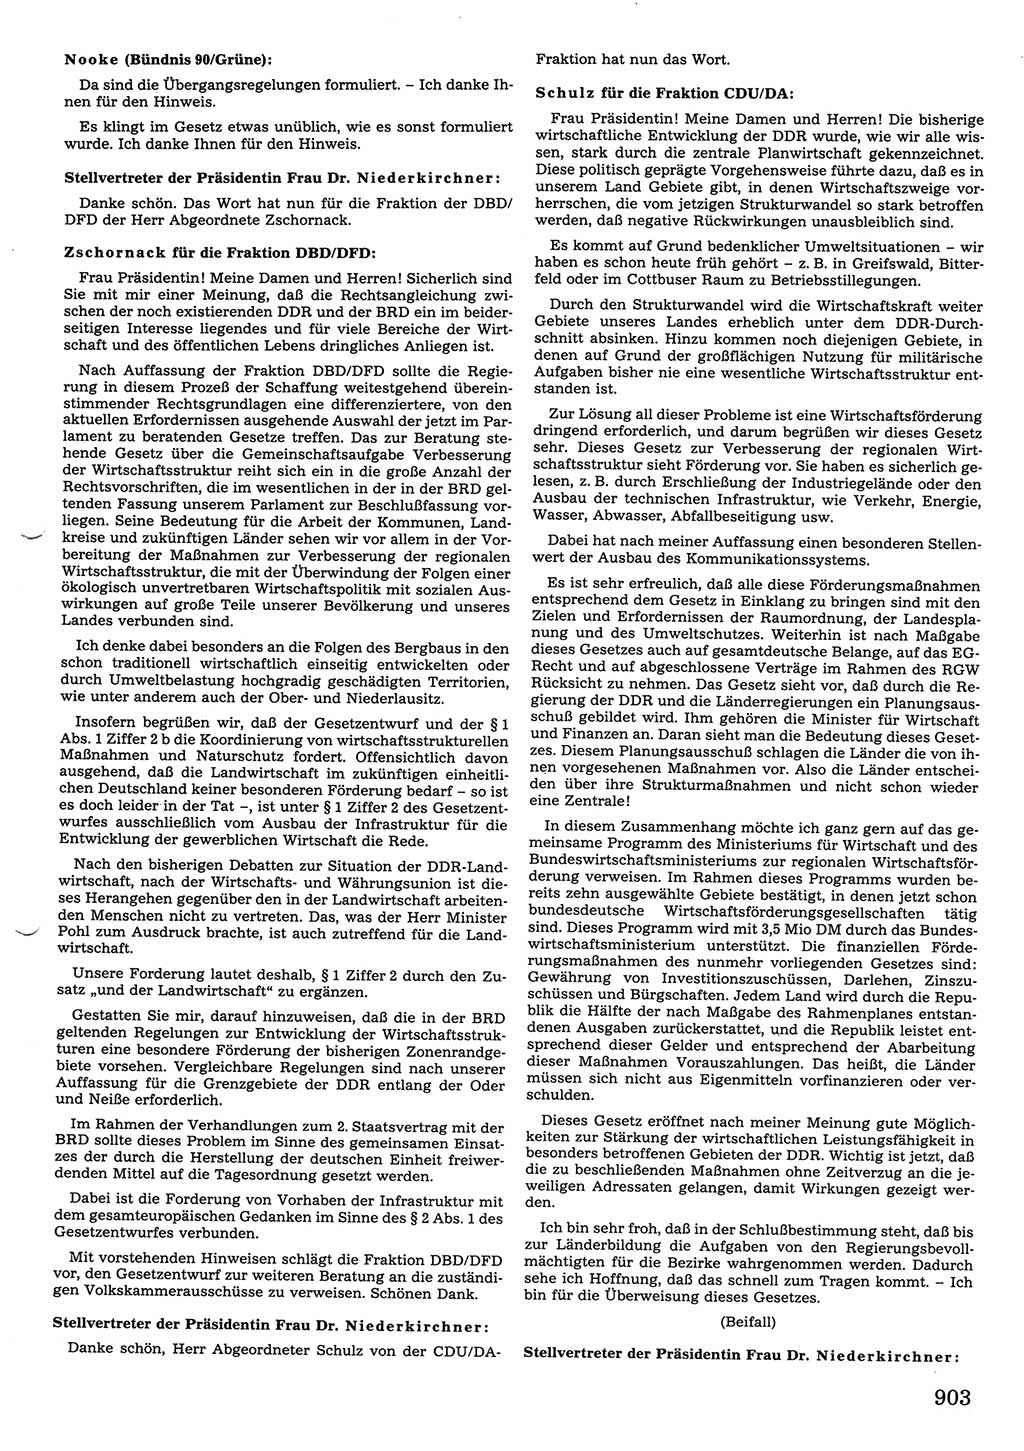 Tagungen der Volkskammer (VK) der Deutschen Demokratischen Republik (DDR), 10. Wahlperiode 1990, Seite 903 (VK. DDR 10. WP. 1990, Prot. Tg. 1-38, 5.4.-2.10.1990, S. 903)